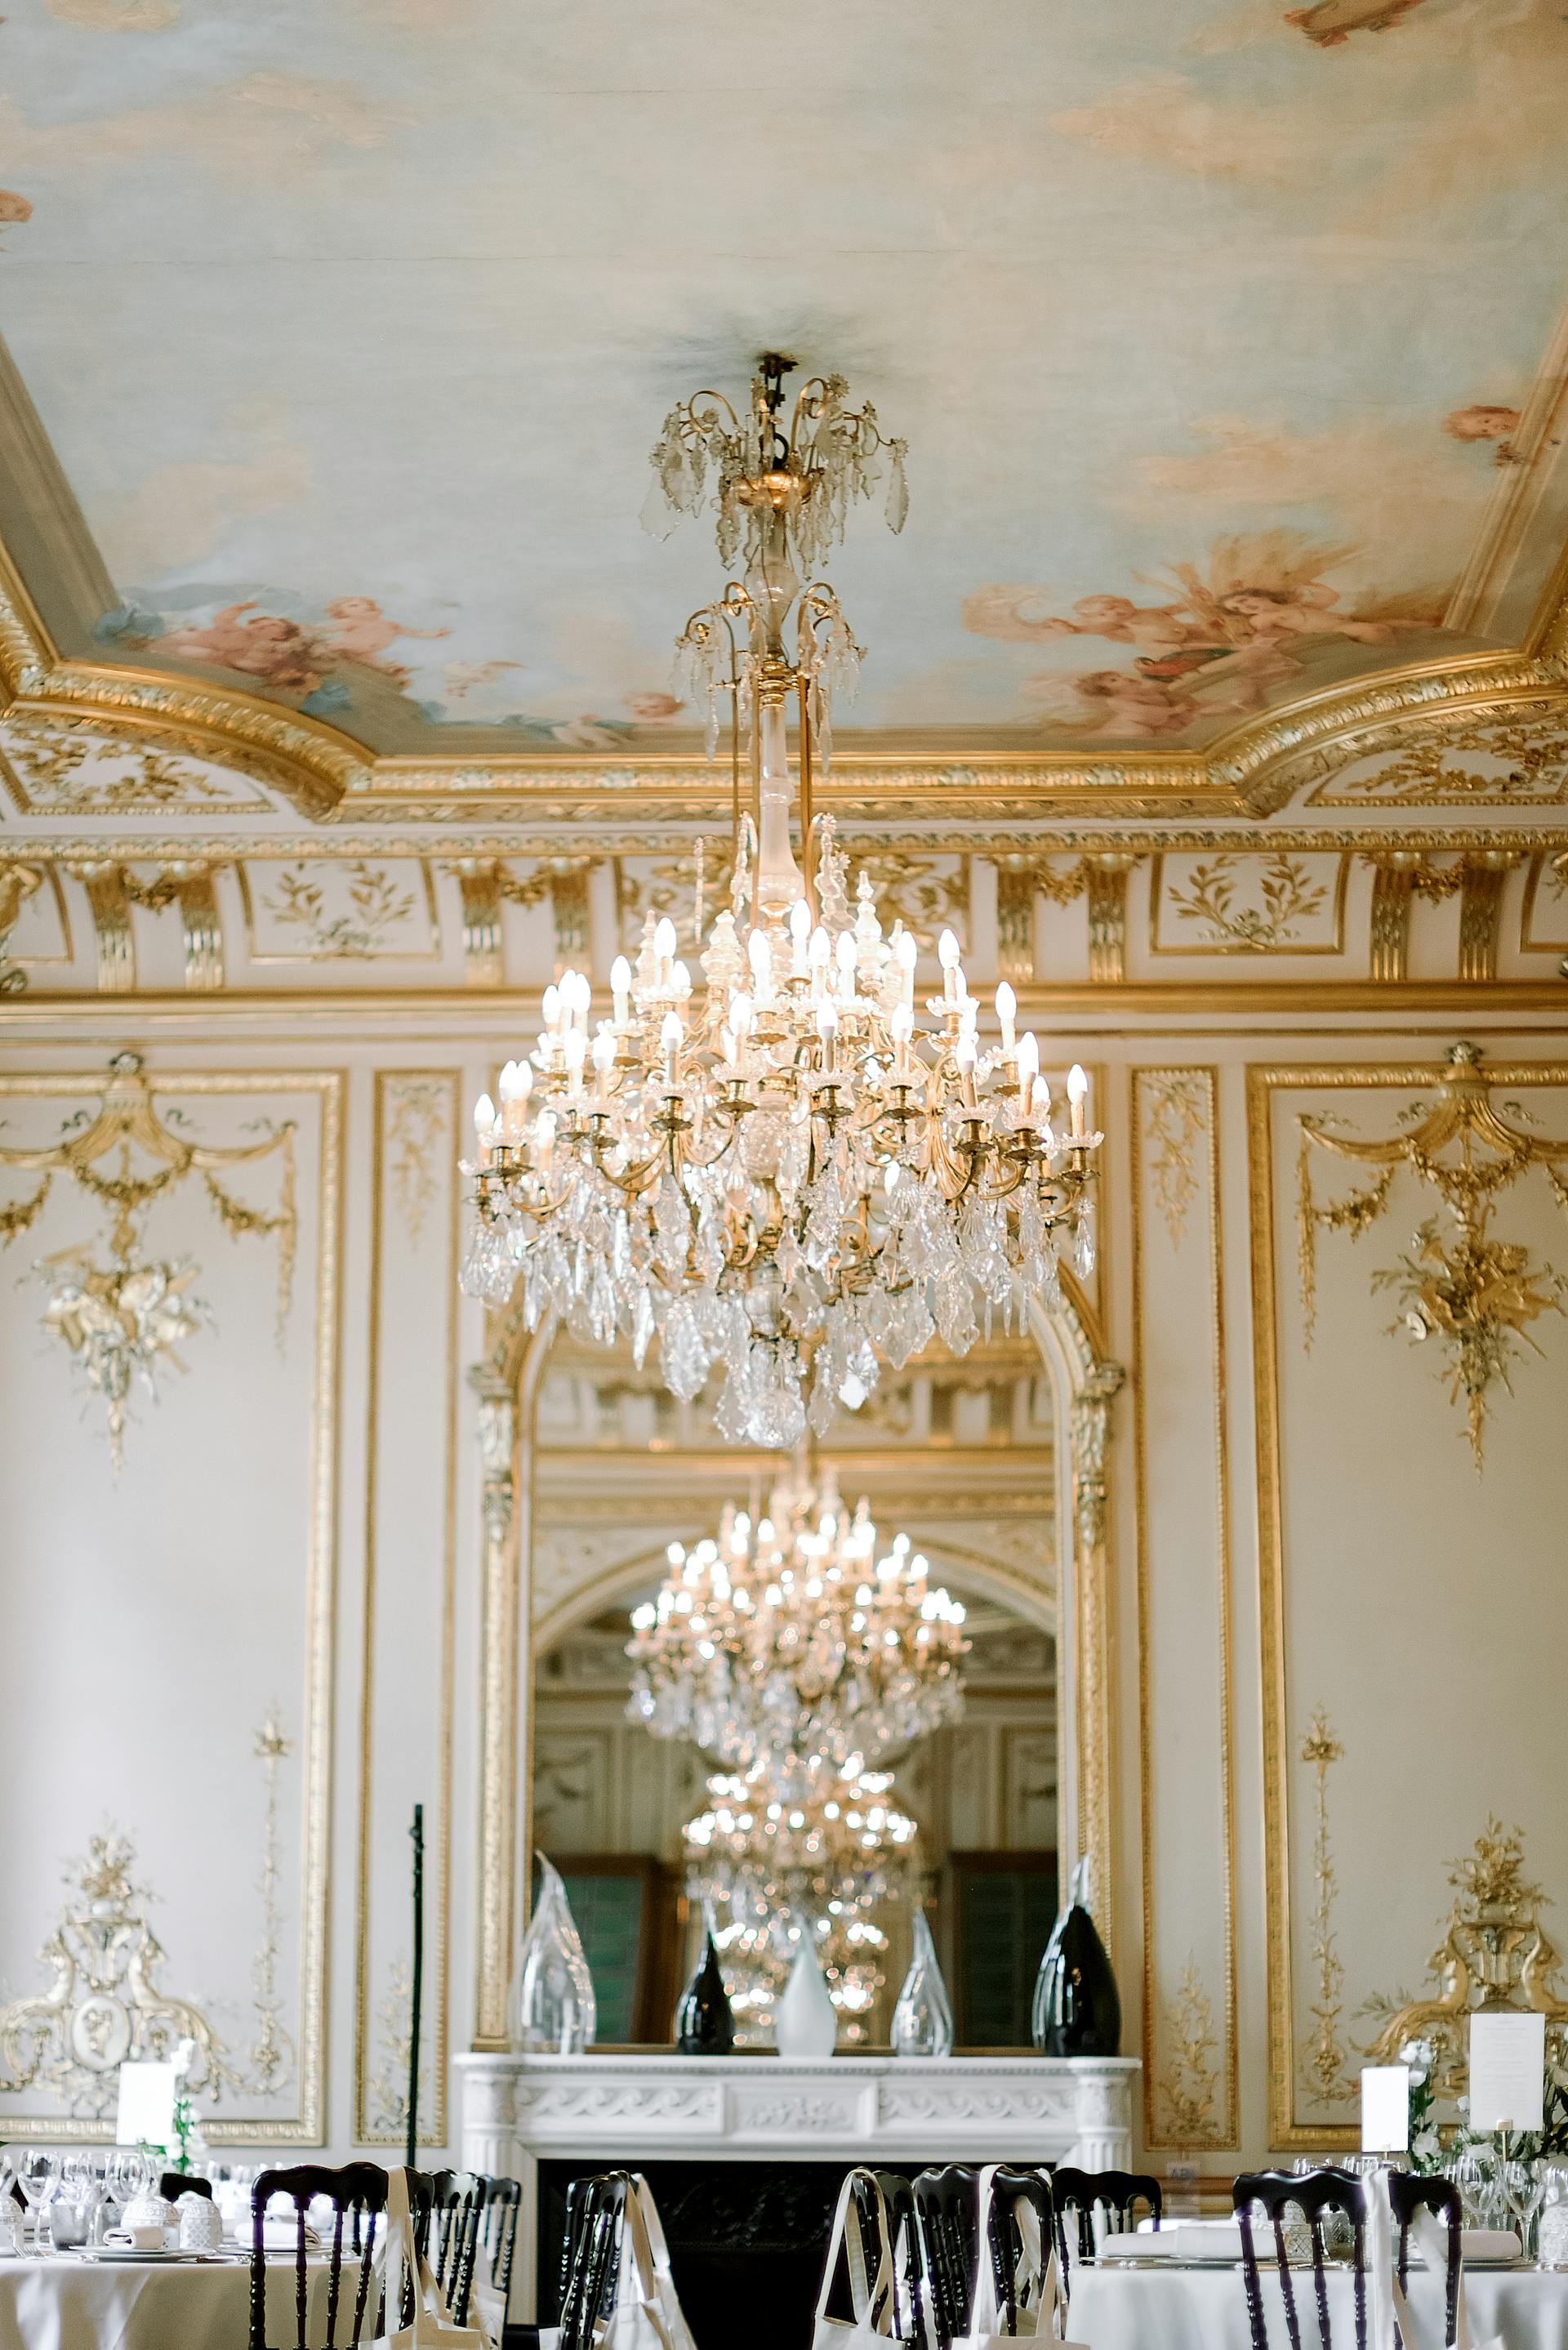 El interior de un elegante restaurante con adornos dorados y arañas de cristal | Fuente: Pexels